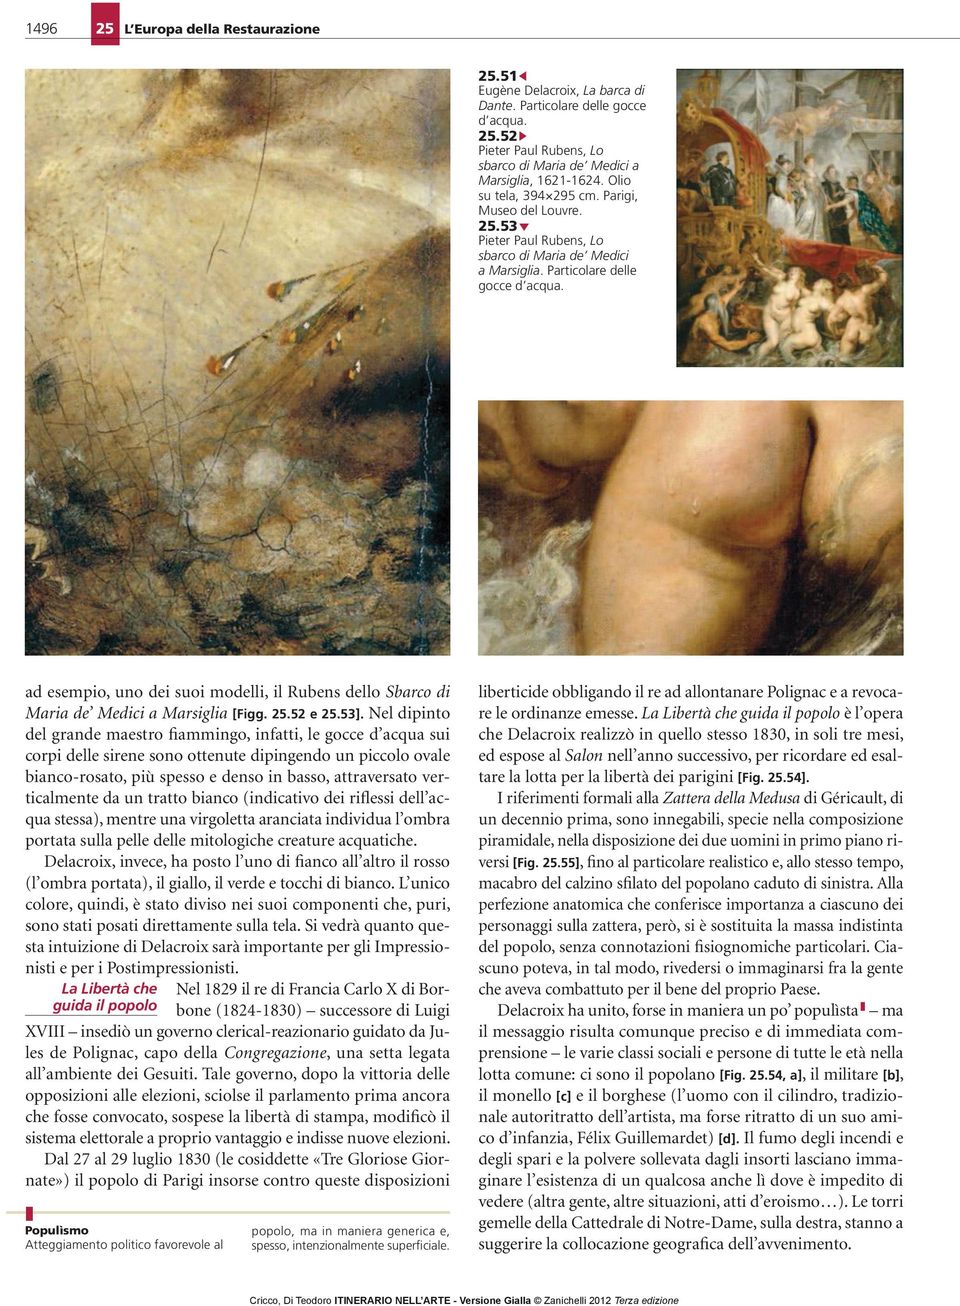 ad esempio, uno dei suoi modelli, il Rubens dello Sbarco di Maria de Medici a Marsiglia [Figg. 25.52 e 25.53].